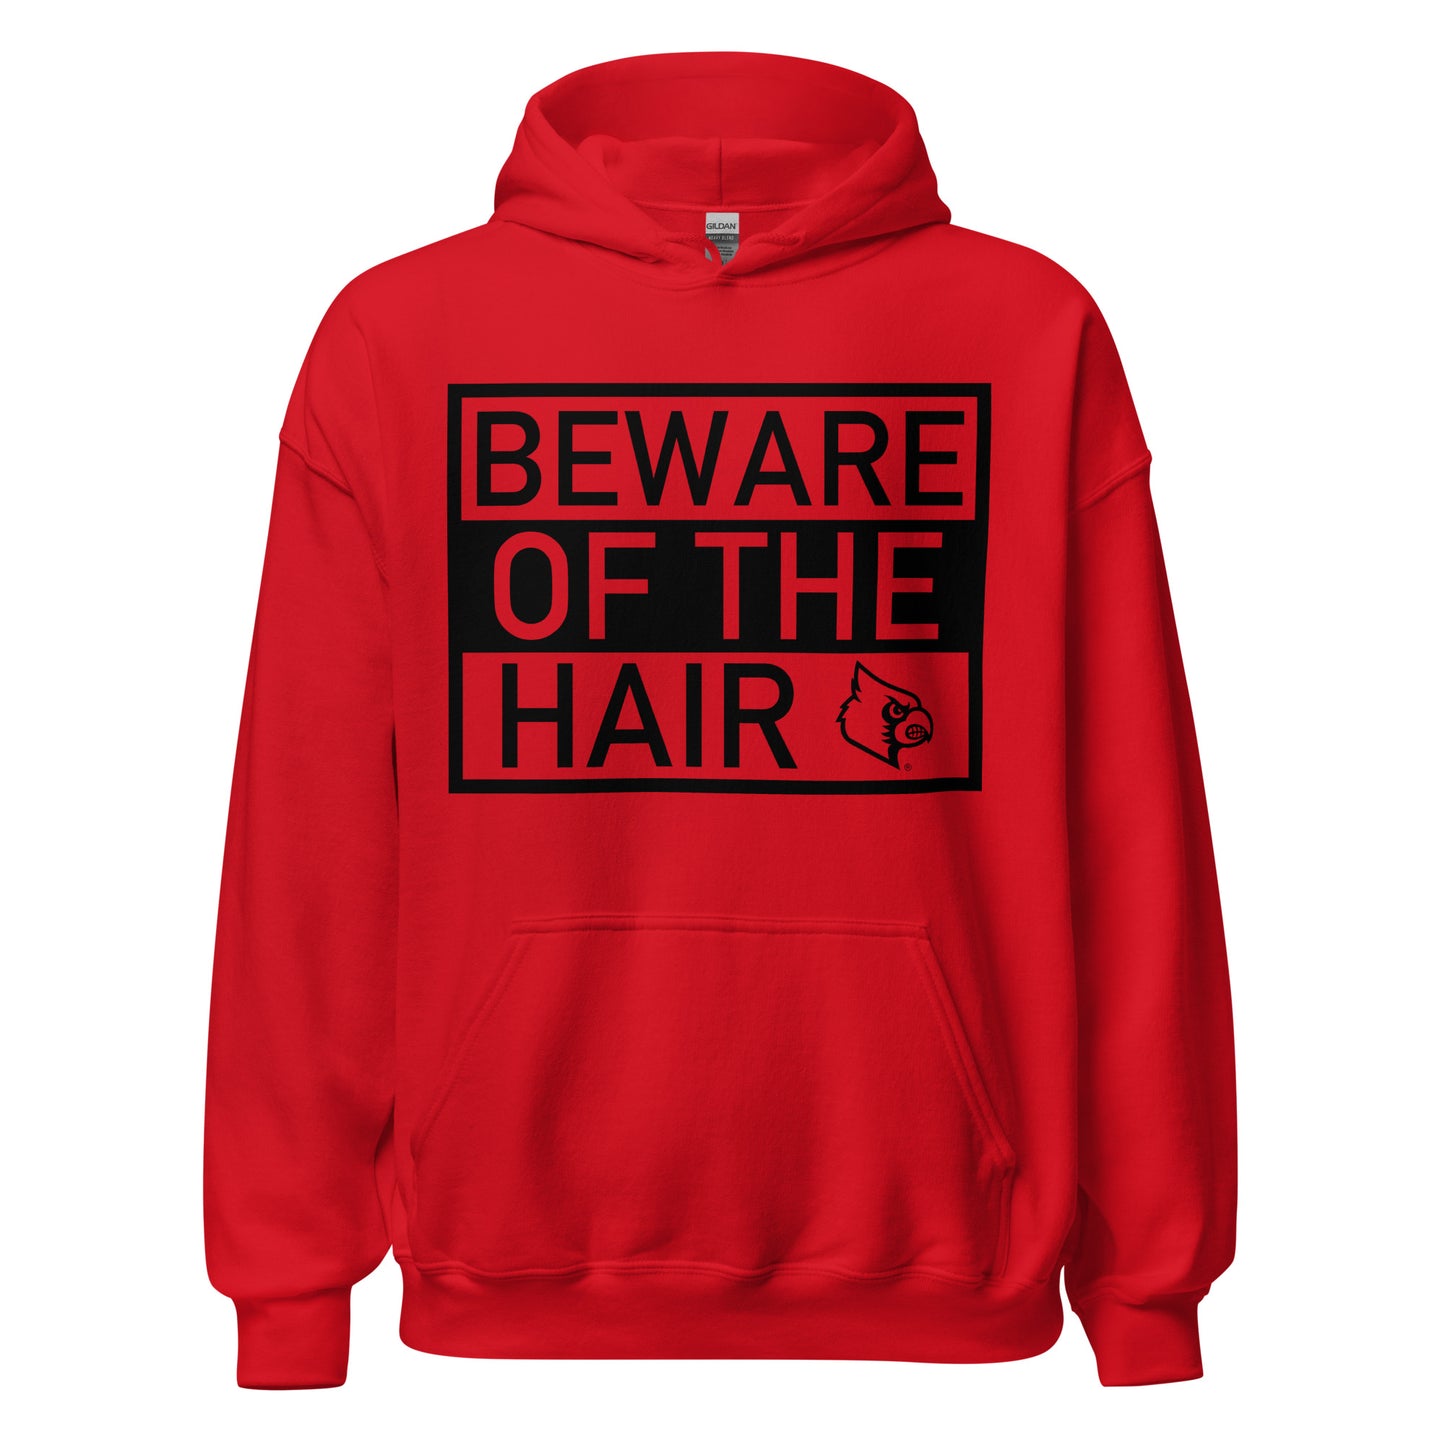 EXCLUSIVE DROP: Beware of the Hair Hoodie in Red